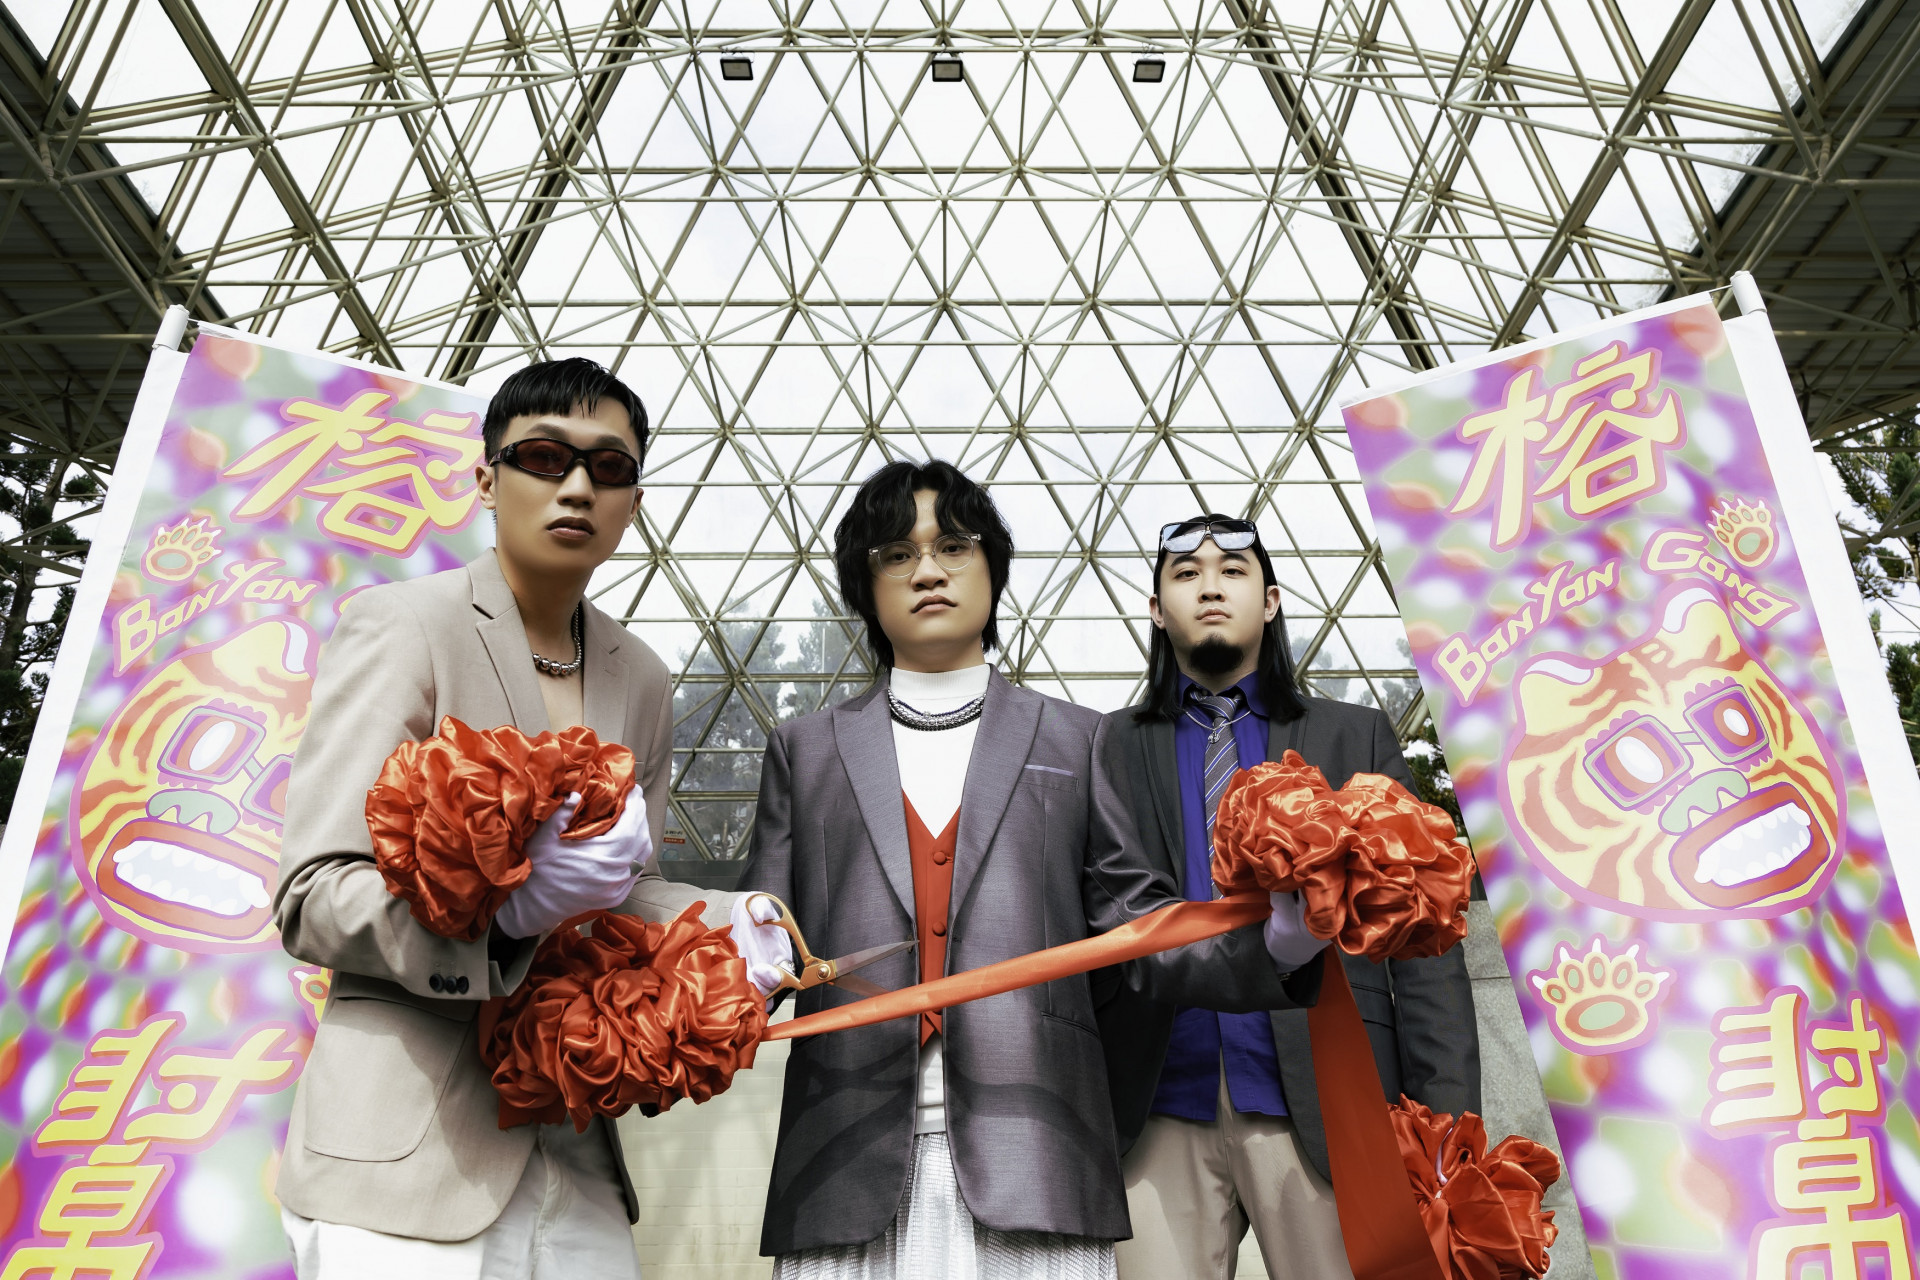 成立於 2015 年的榕幫是一組來自台南的三人嘻哈演唱組合